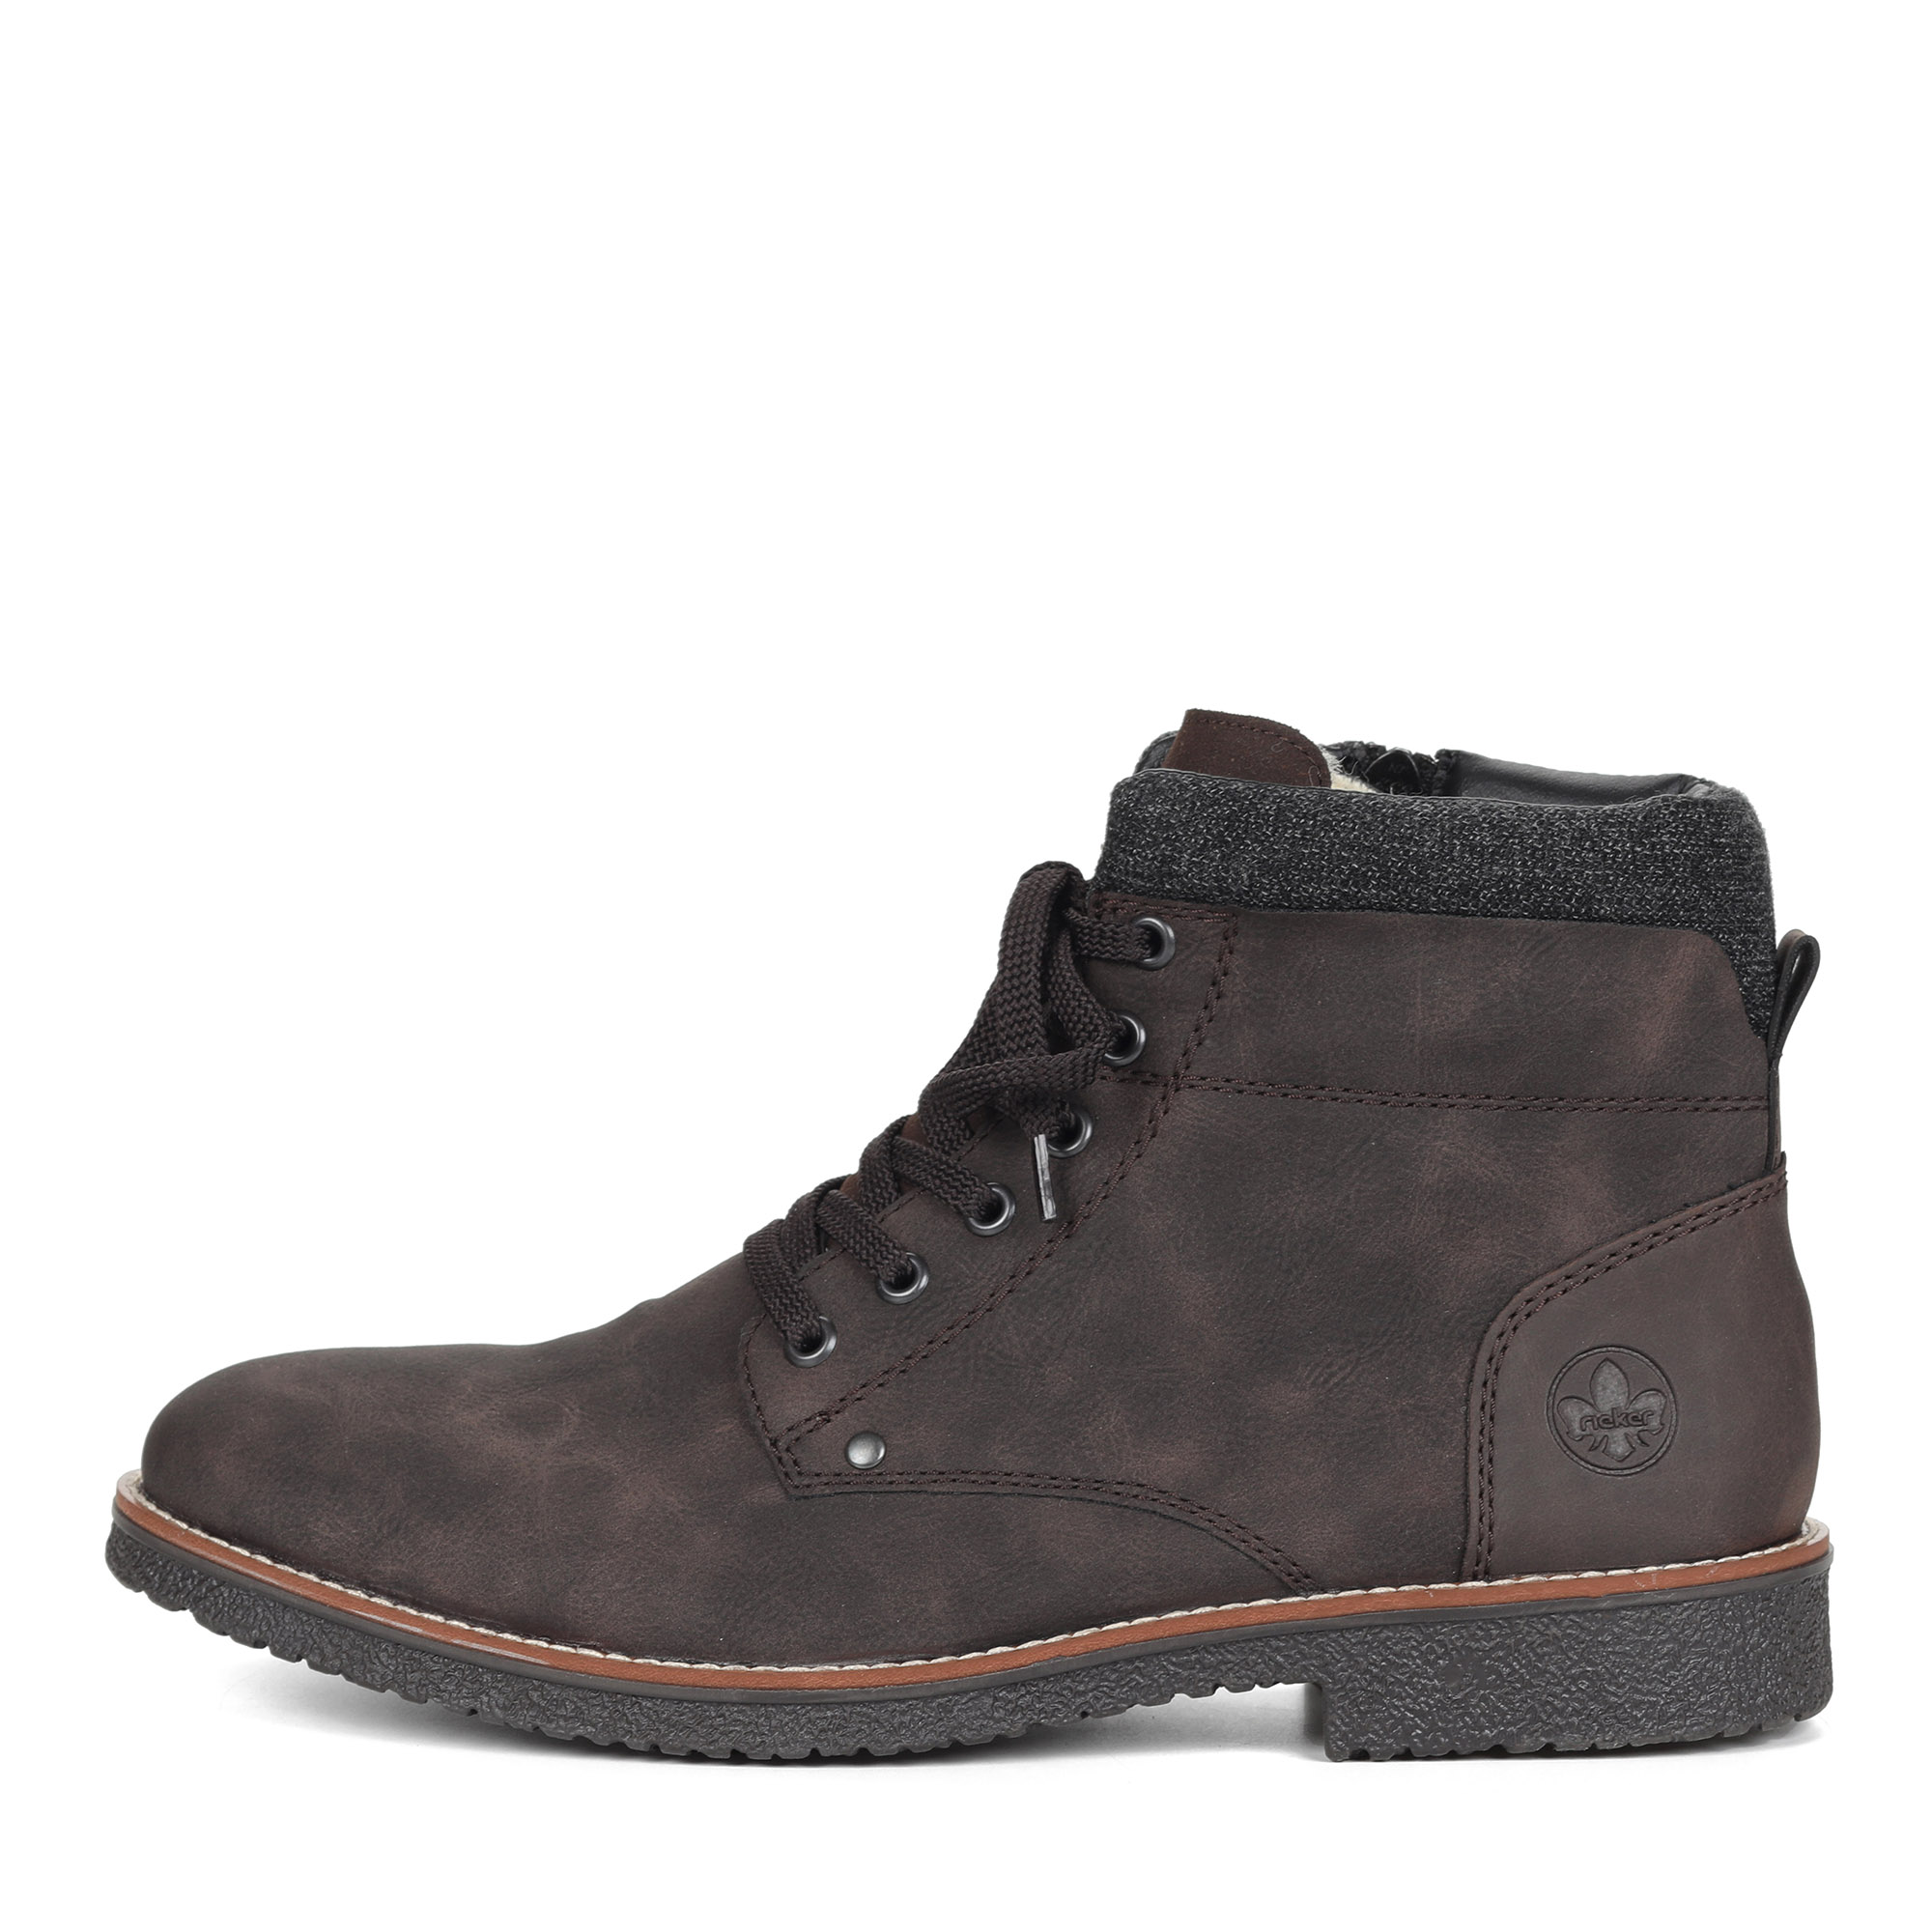 Коричневые ботинки из экокожи на подкладке из натуральной шерсти на шнурках Rieker, размер 45, цвет коричневый - фото 2